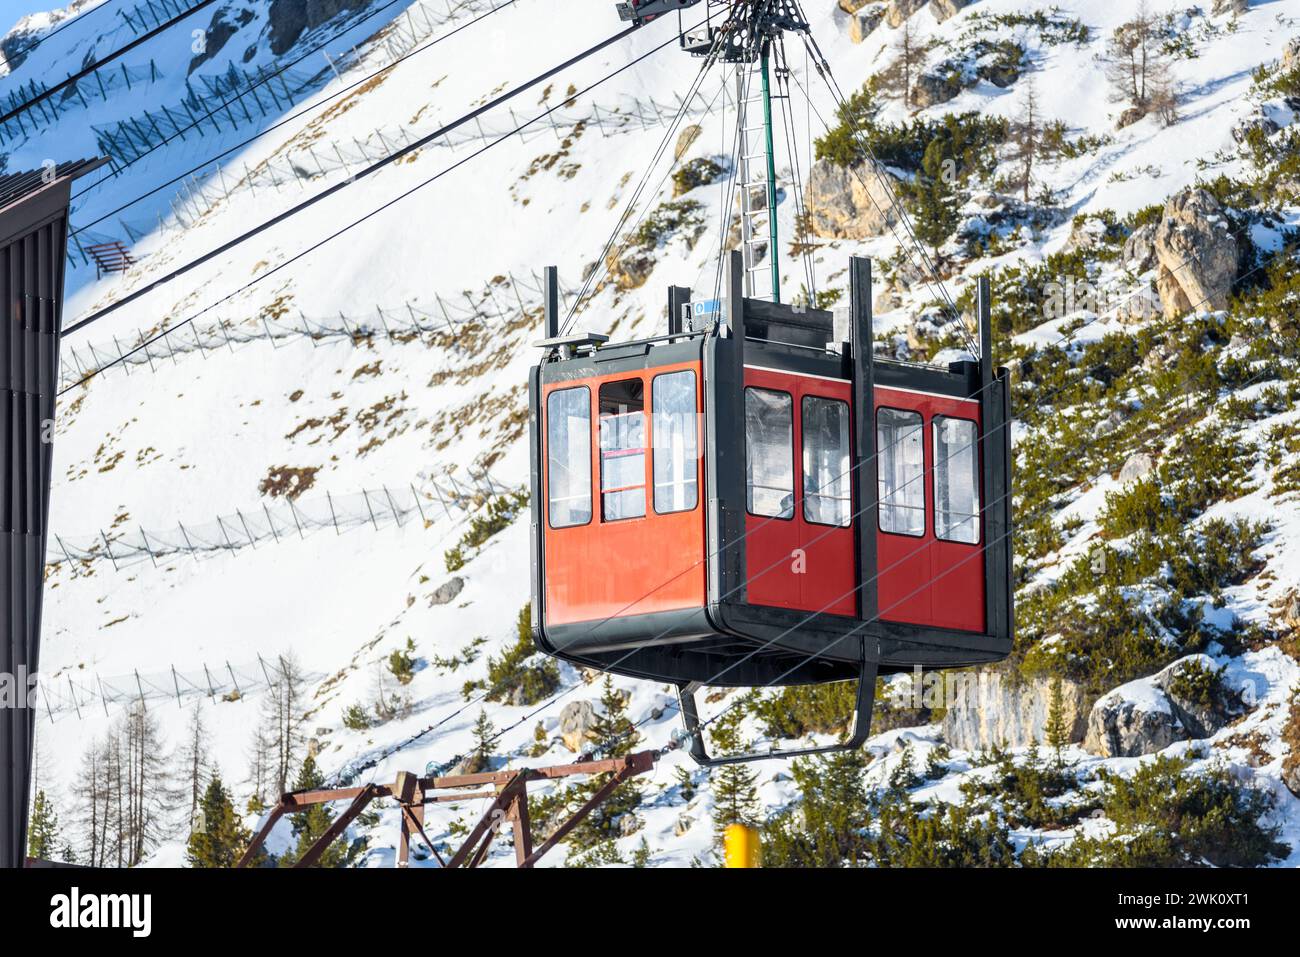 Dettaglio di una cabina della funivia aerea passeggeri che si avvicina alla stazione inferiore delle Alpi in una soleggiata giornata invernale Foto Stock